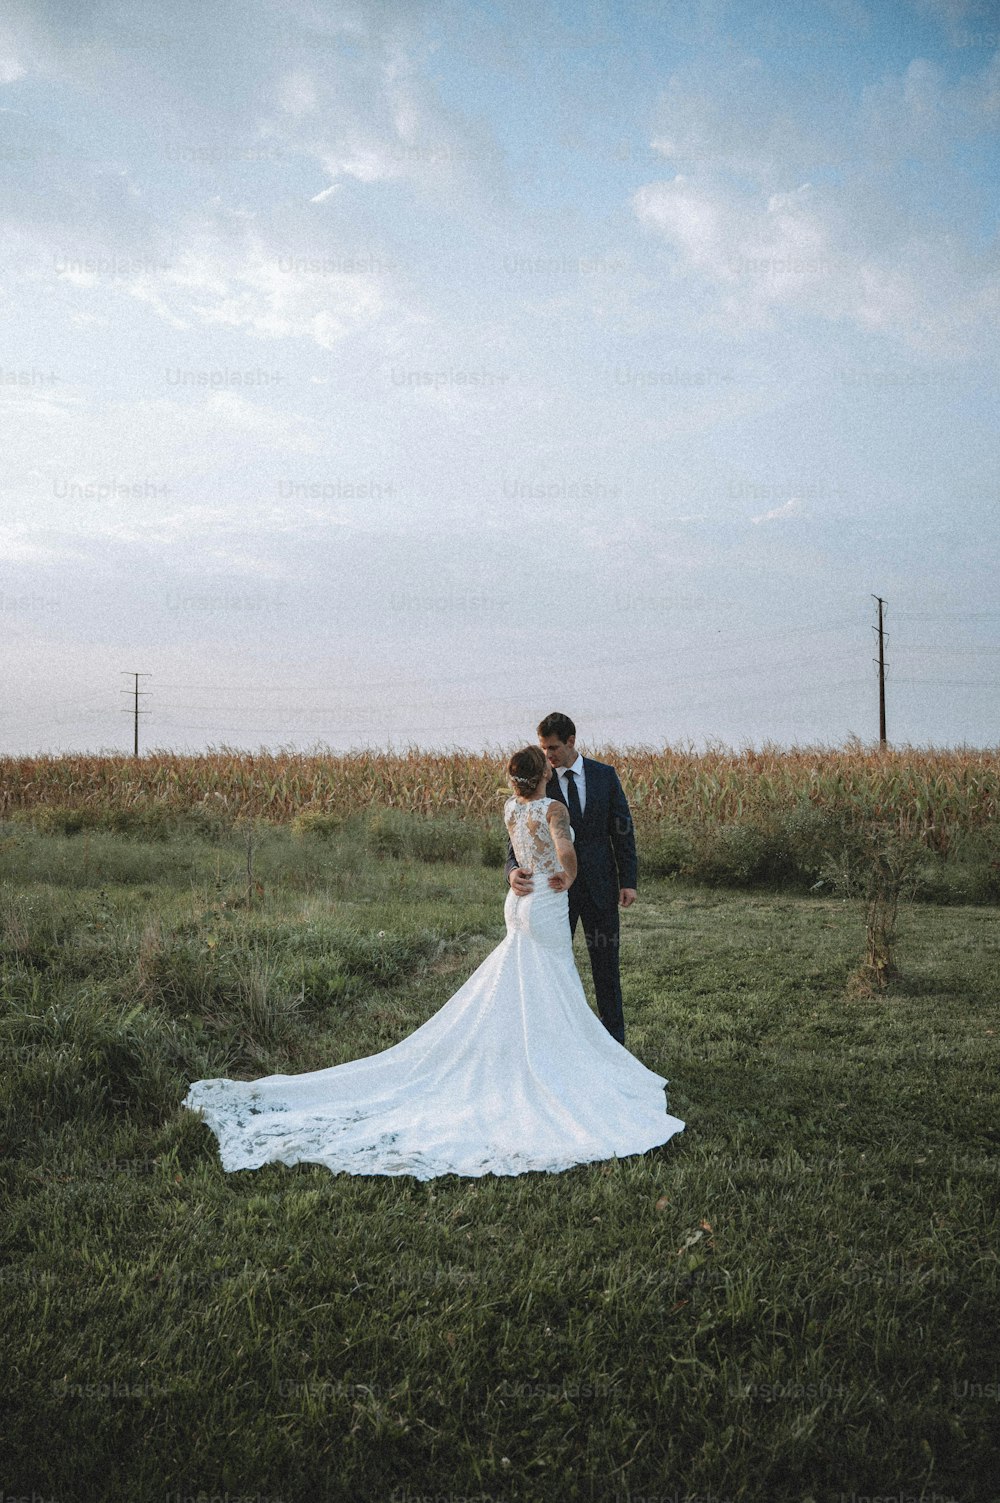 Una sposa e uno sposo in piedi in un campo